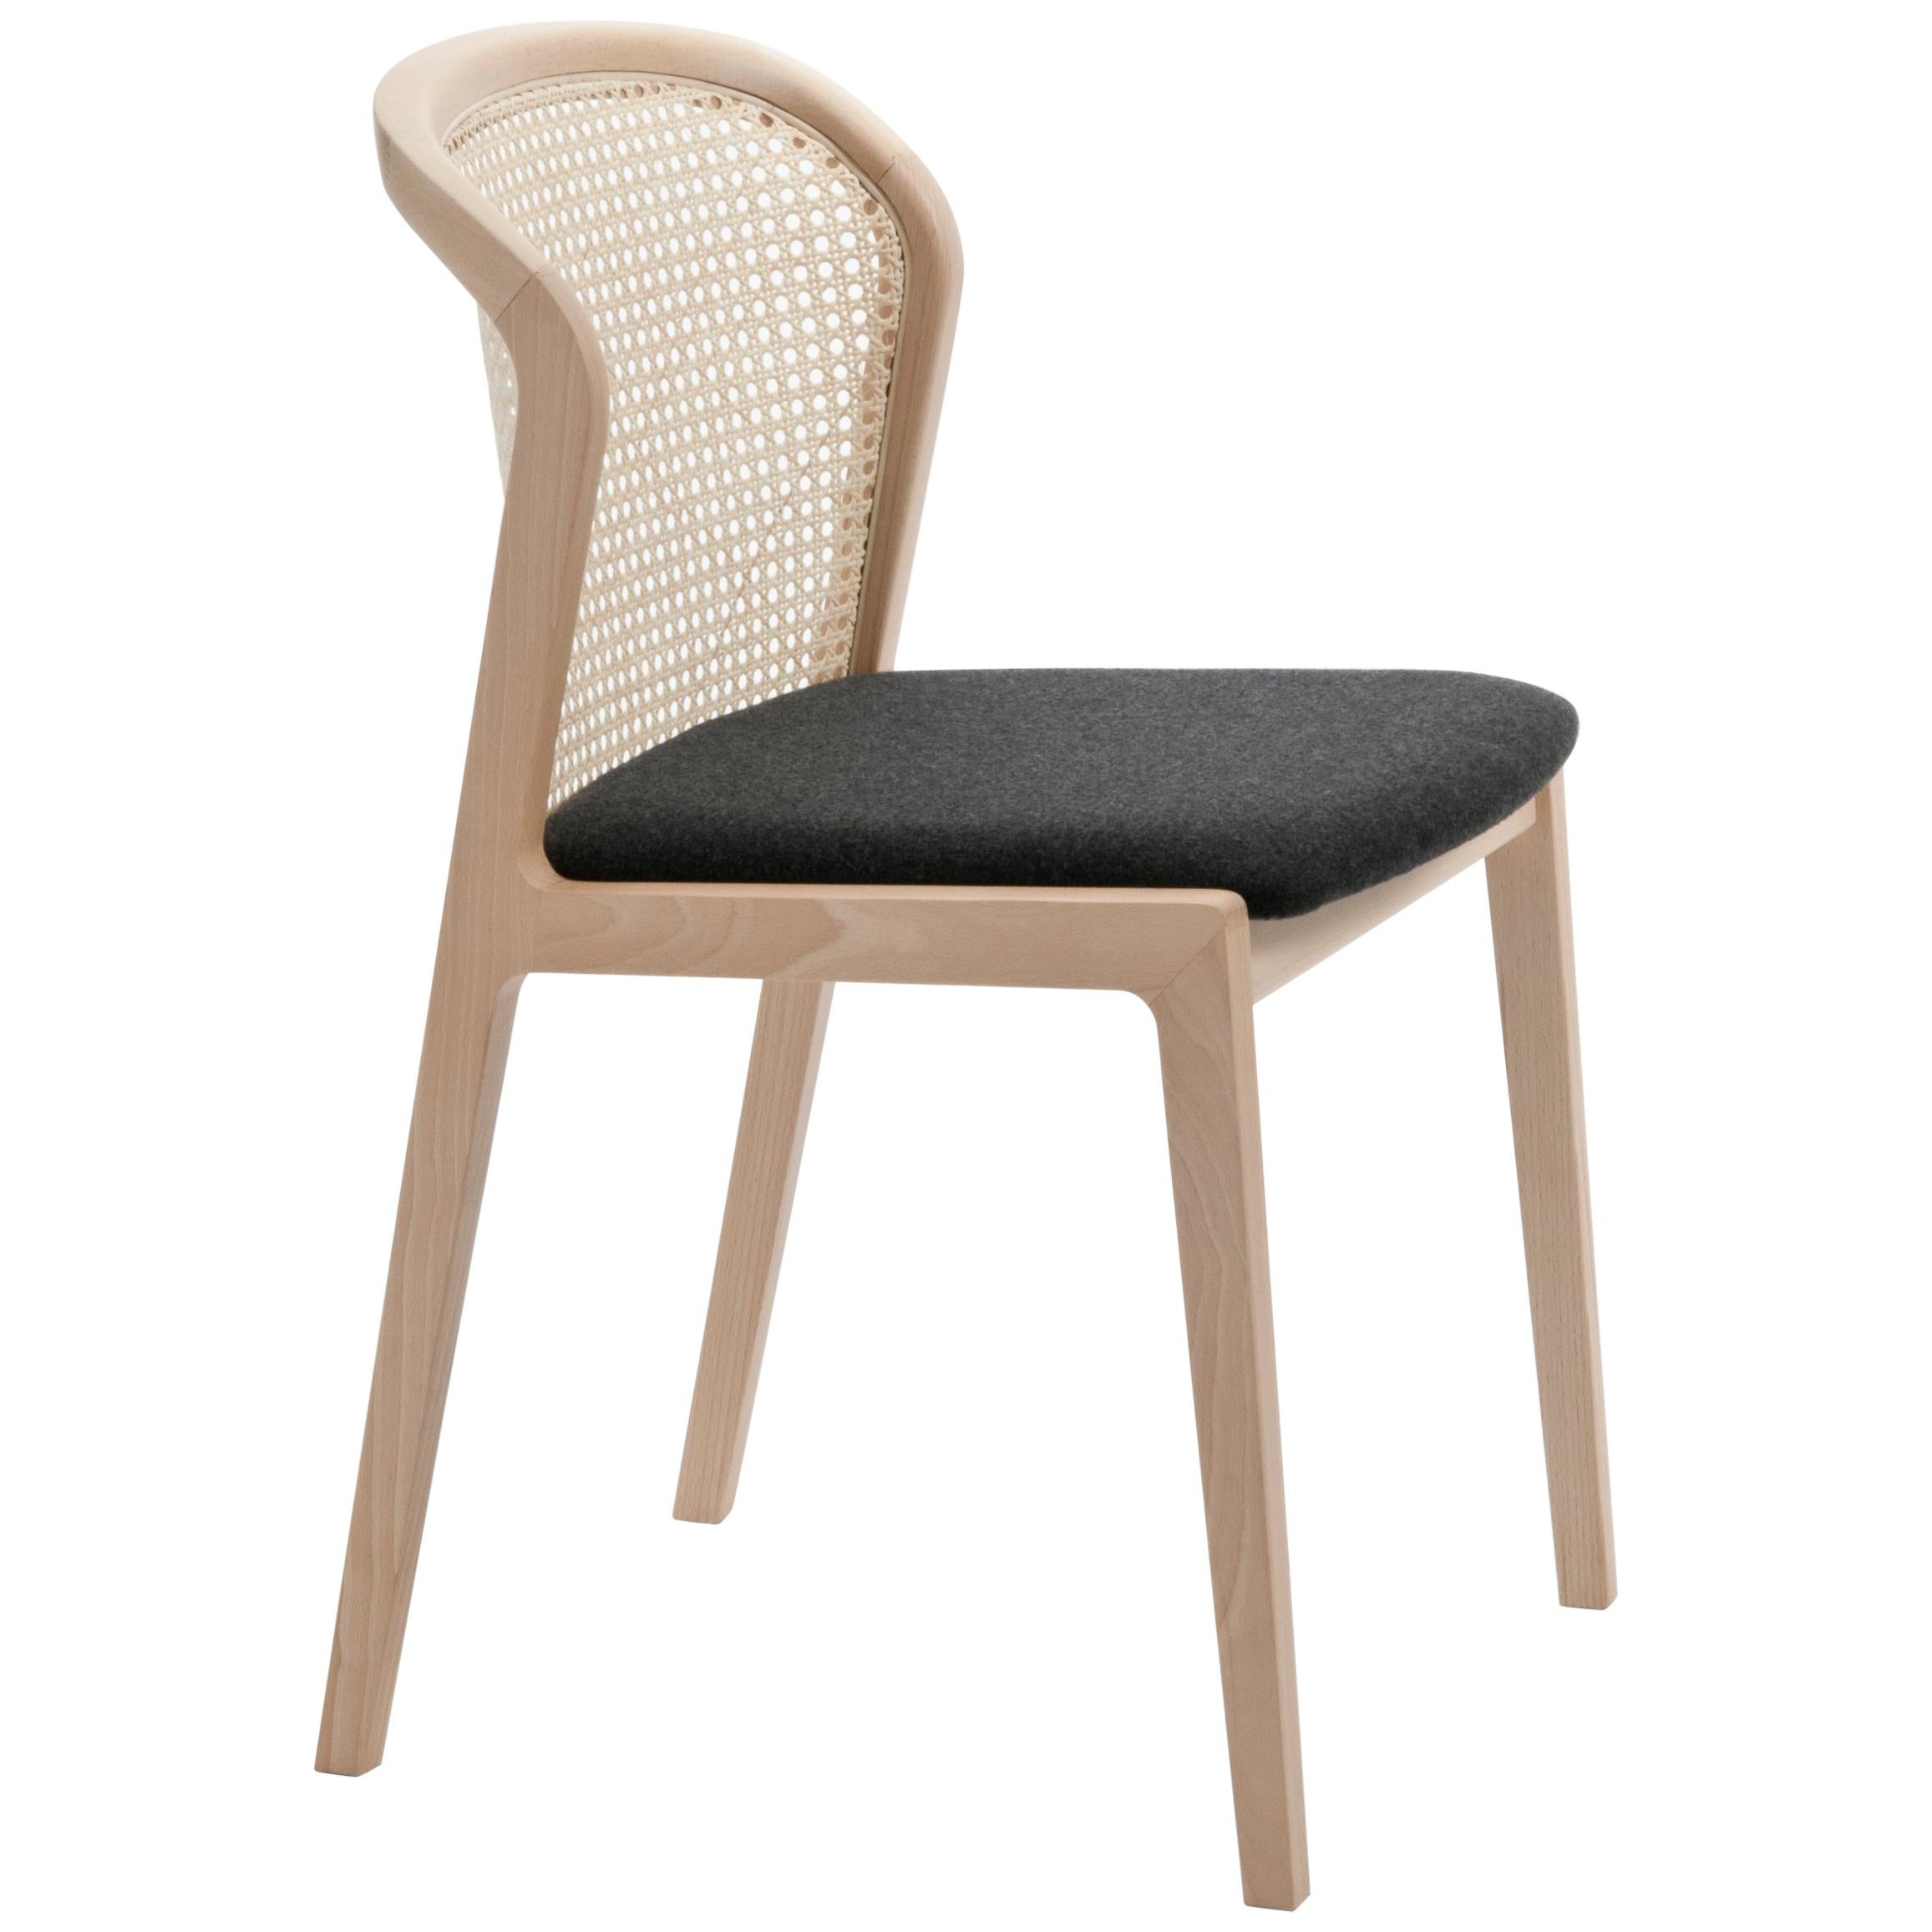 Chaise Vienna de Col, design moderne en bois et paille, assise tapissée noire en vente